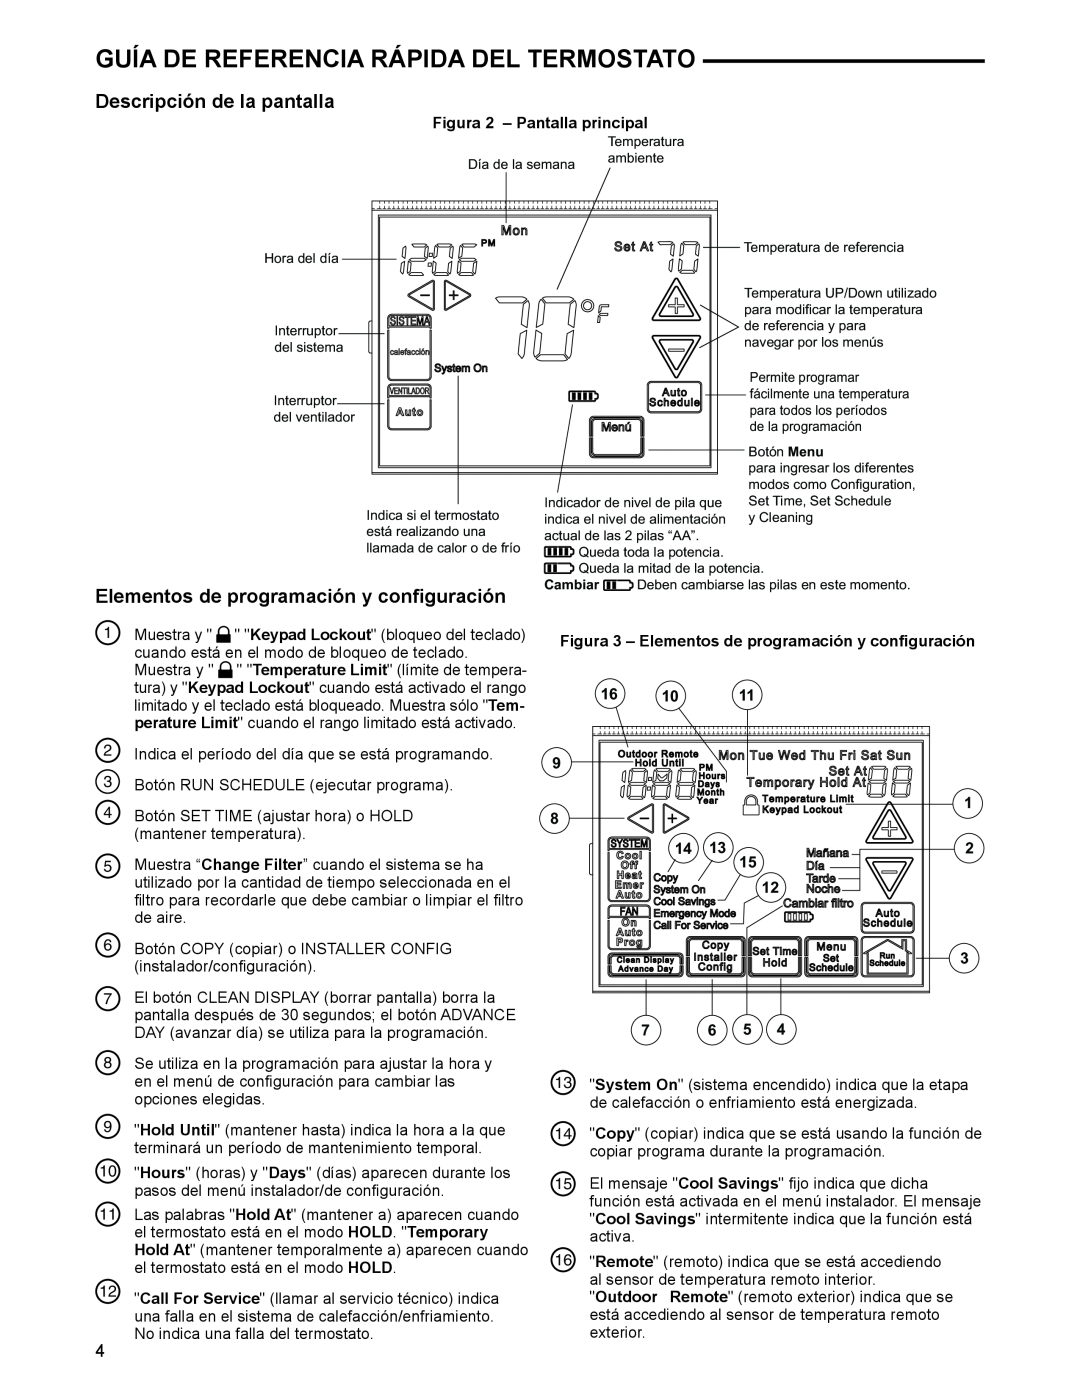 White Rodgers 1F97-1277 manual Guía De Referencia Rápida Del Termostato, Descripción de la pantalla 